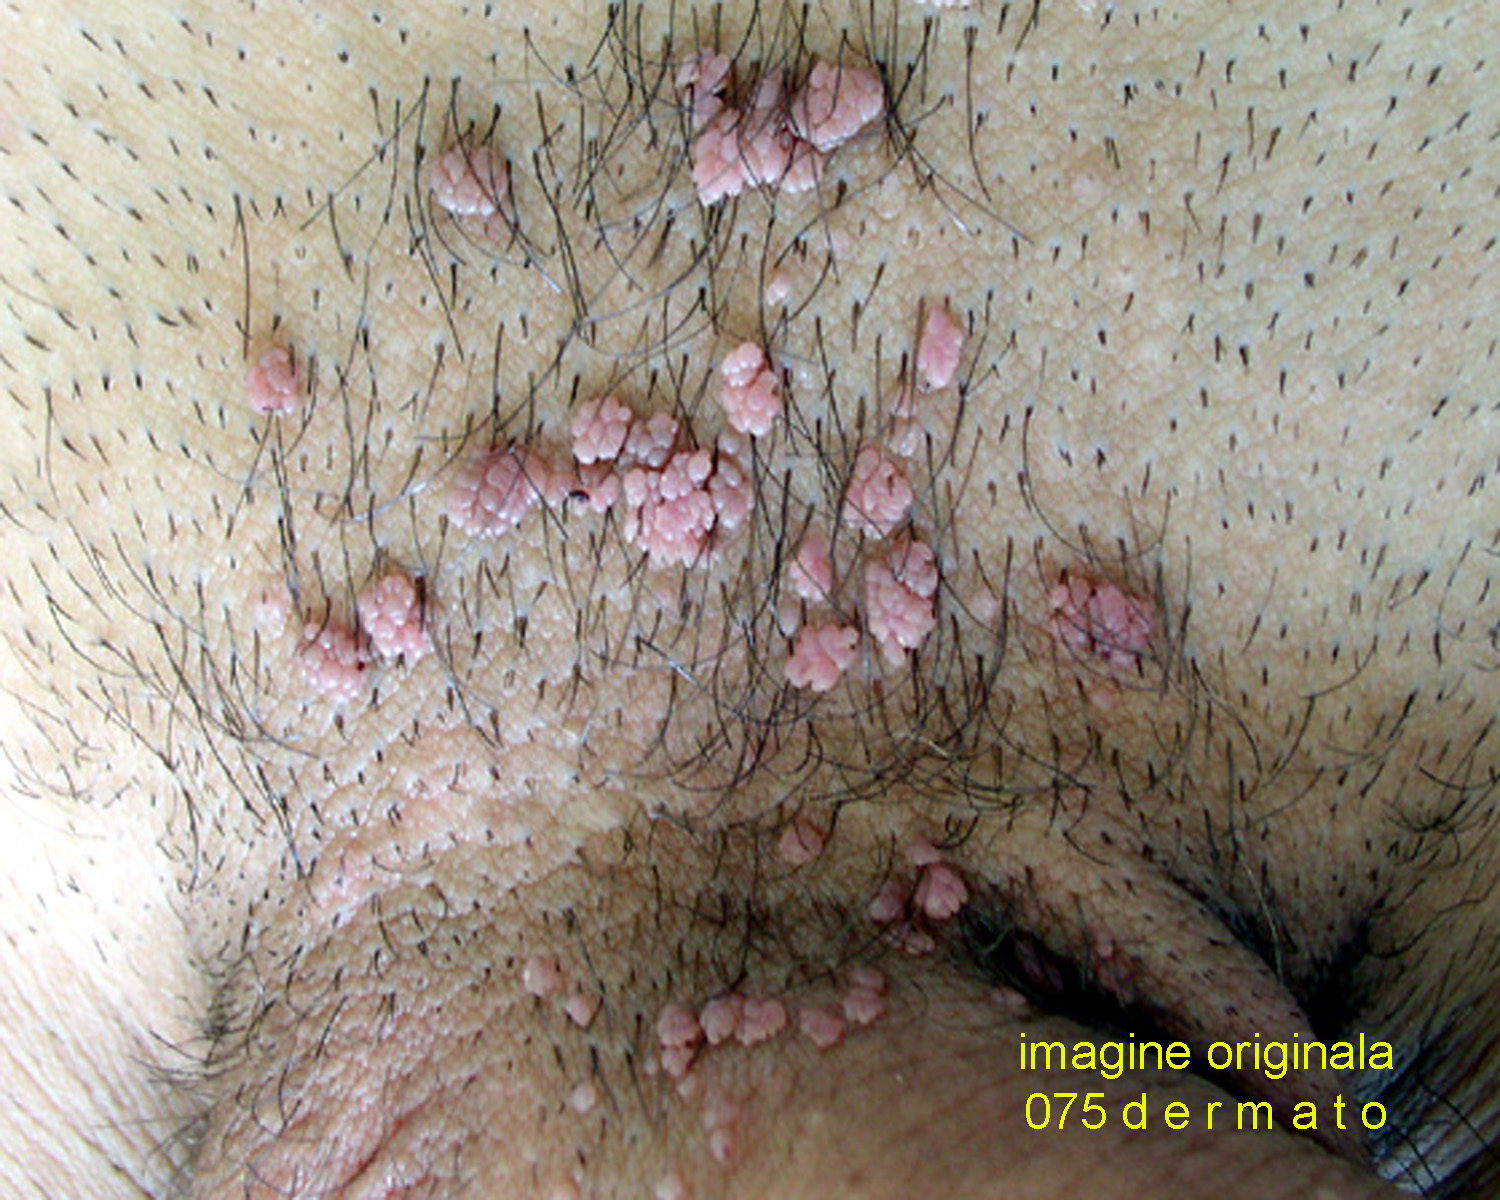 papilom în fața unei femei hpv rash treatment